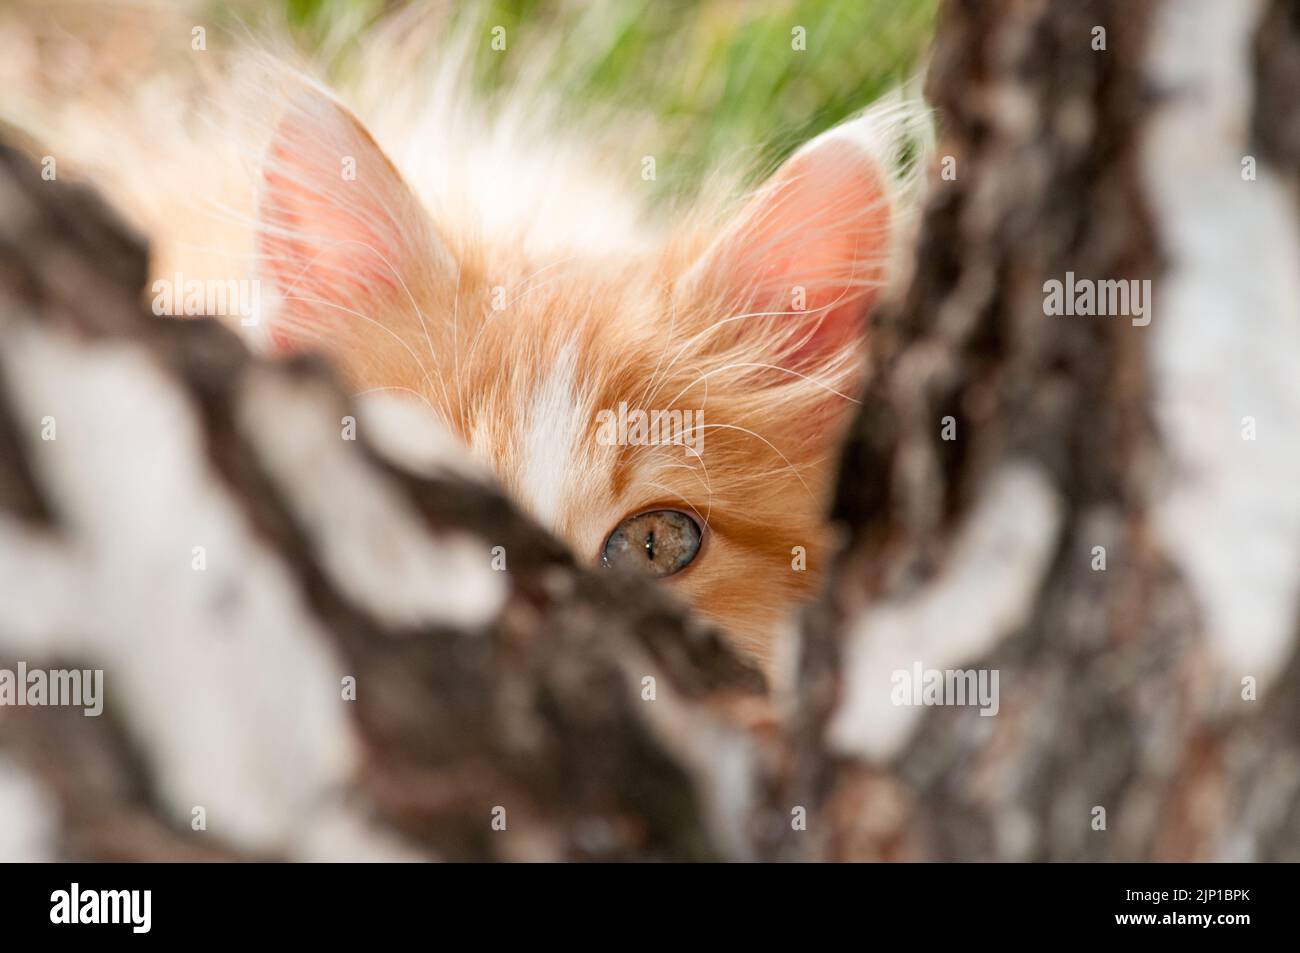 Ein kleines orangefarbenes und weißes Kätzchen blickt mit einem Auge hinter einen Baumstamm Stockfoto